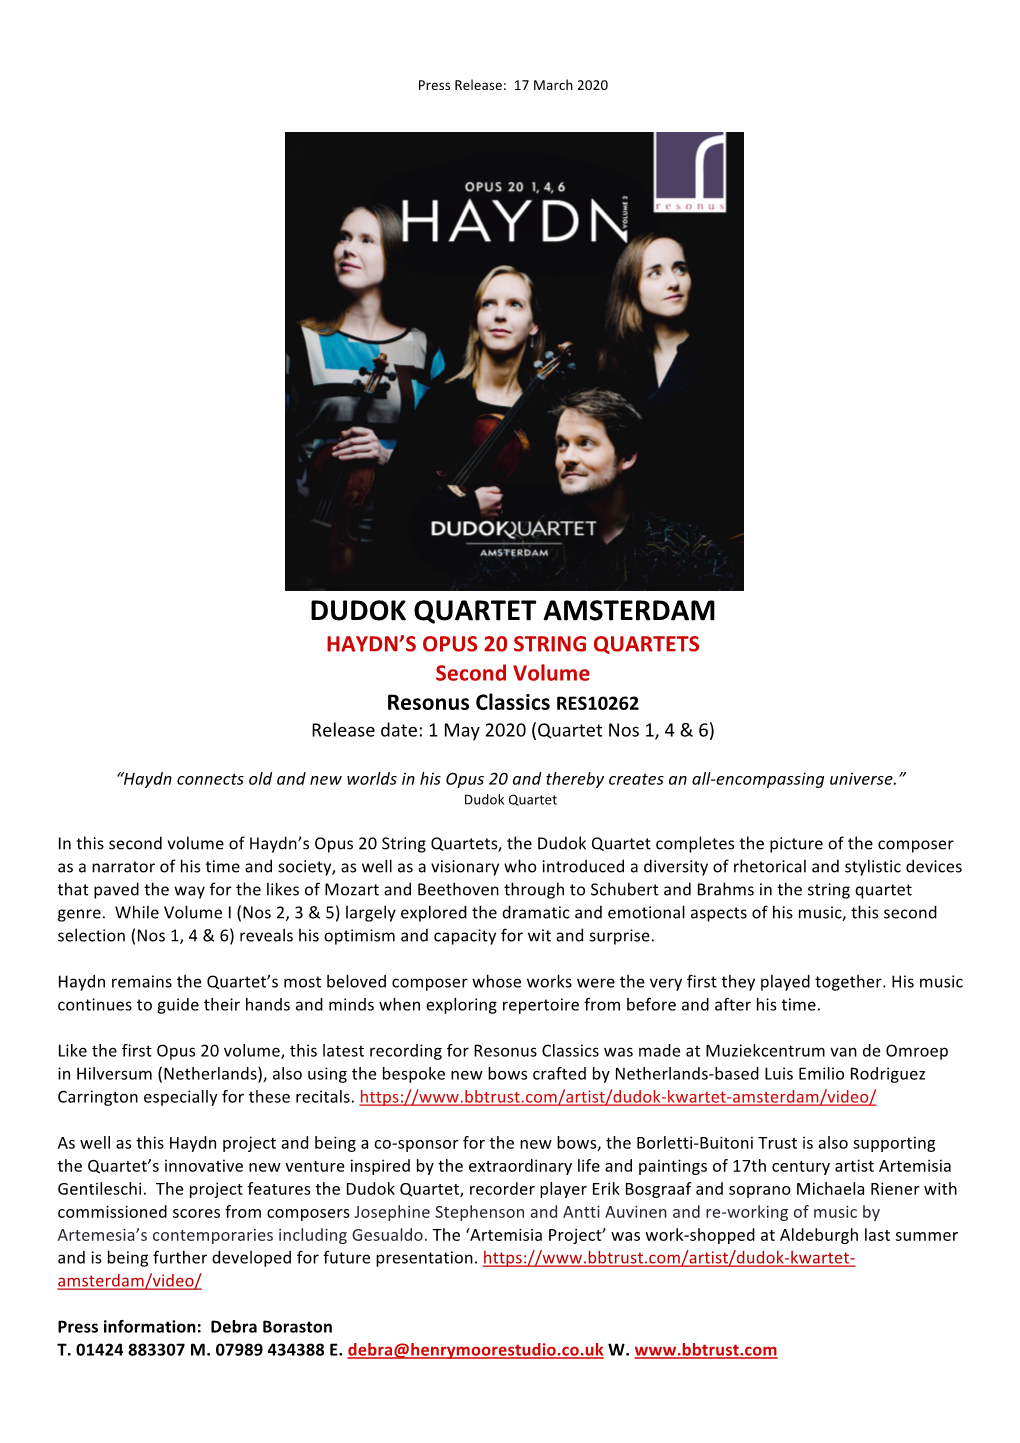 DUDOK QUARTET AMSTERDAM HAYDN’S OPUS 20 STRING QUARTETS Second Volume Resonus Classics RES10262 Release Date: 1 May 2020 (Quartet Nos 1, 4 & 6)